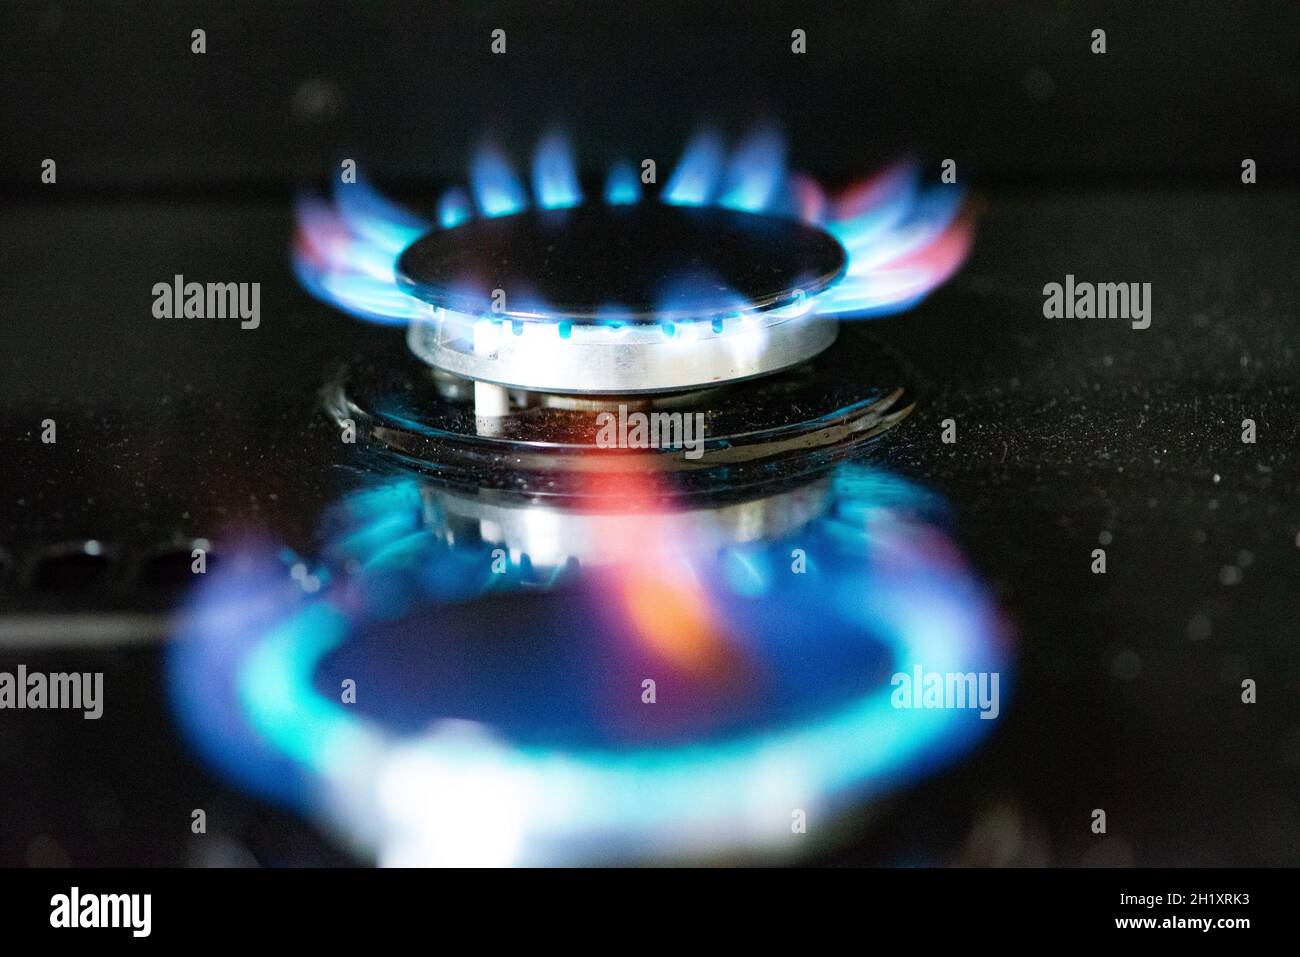 Un anneau de gaz allumé sur une cuisinière, Cumbria, Royaume-Uni. Banque D'Images